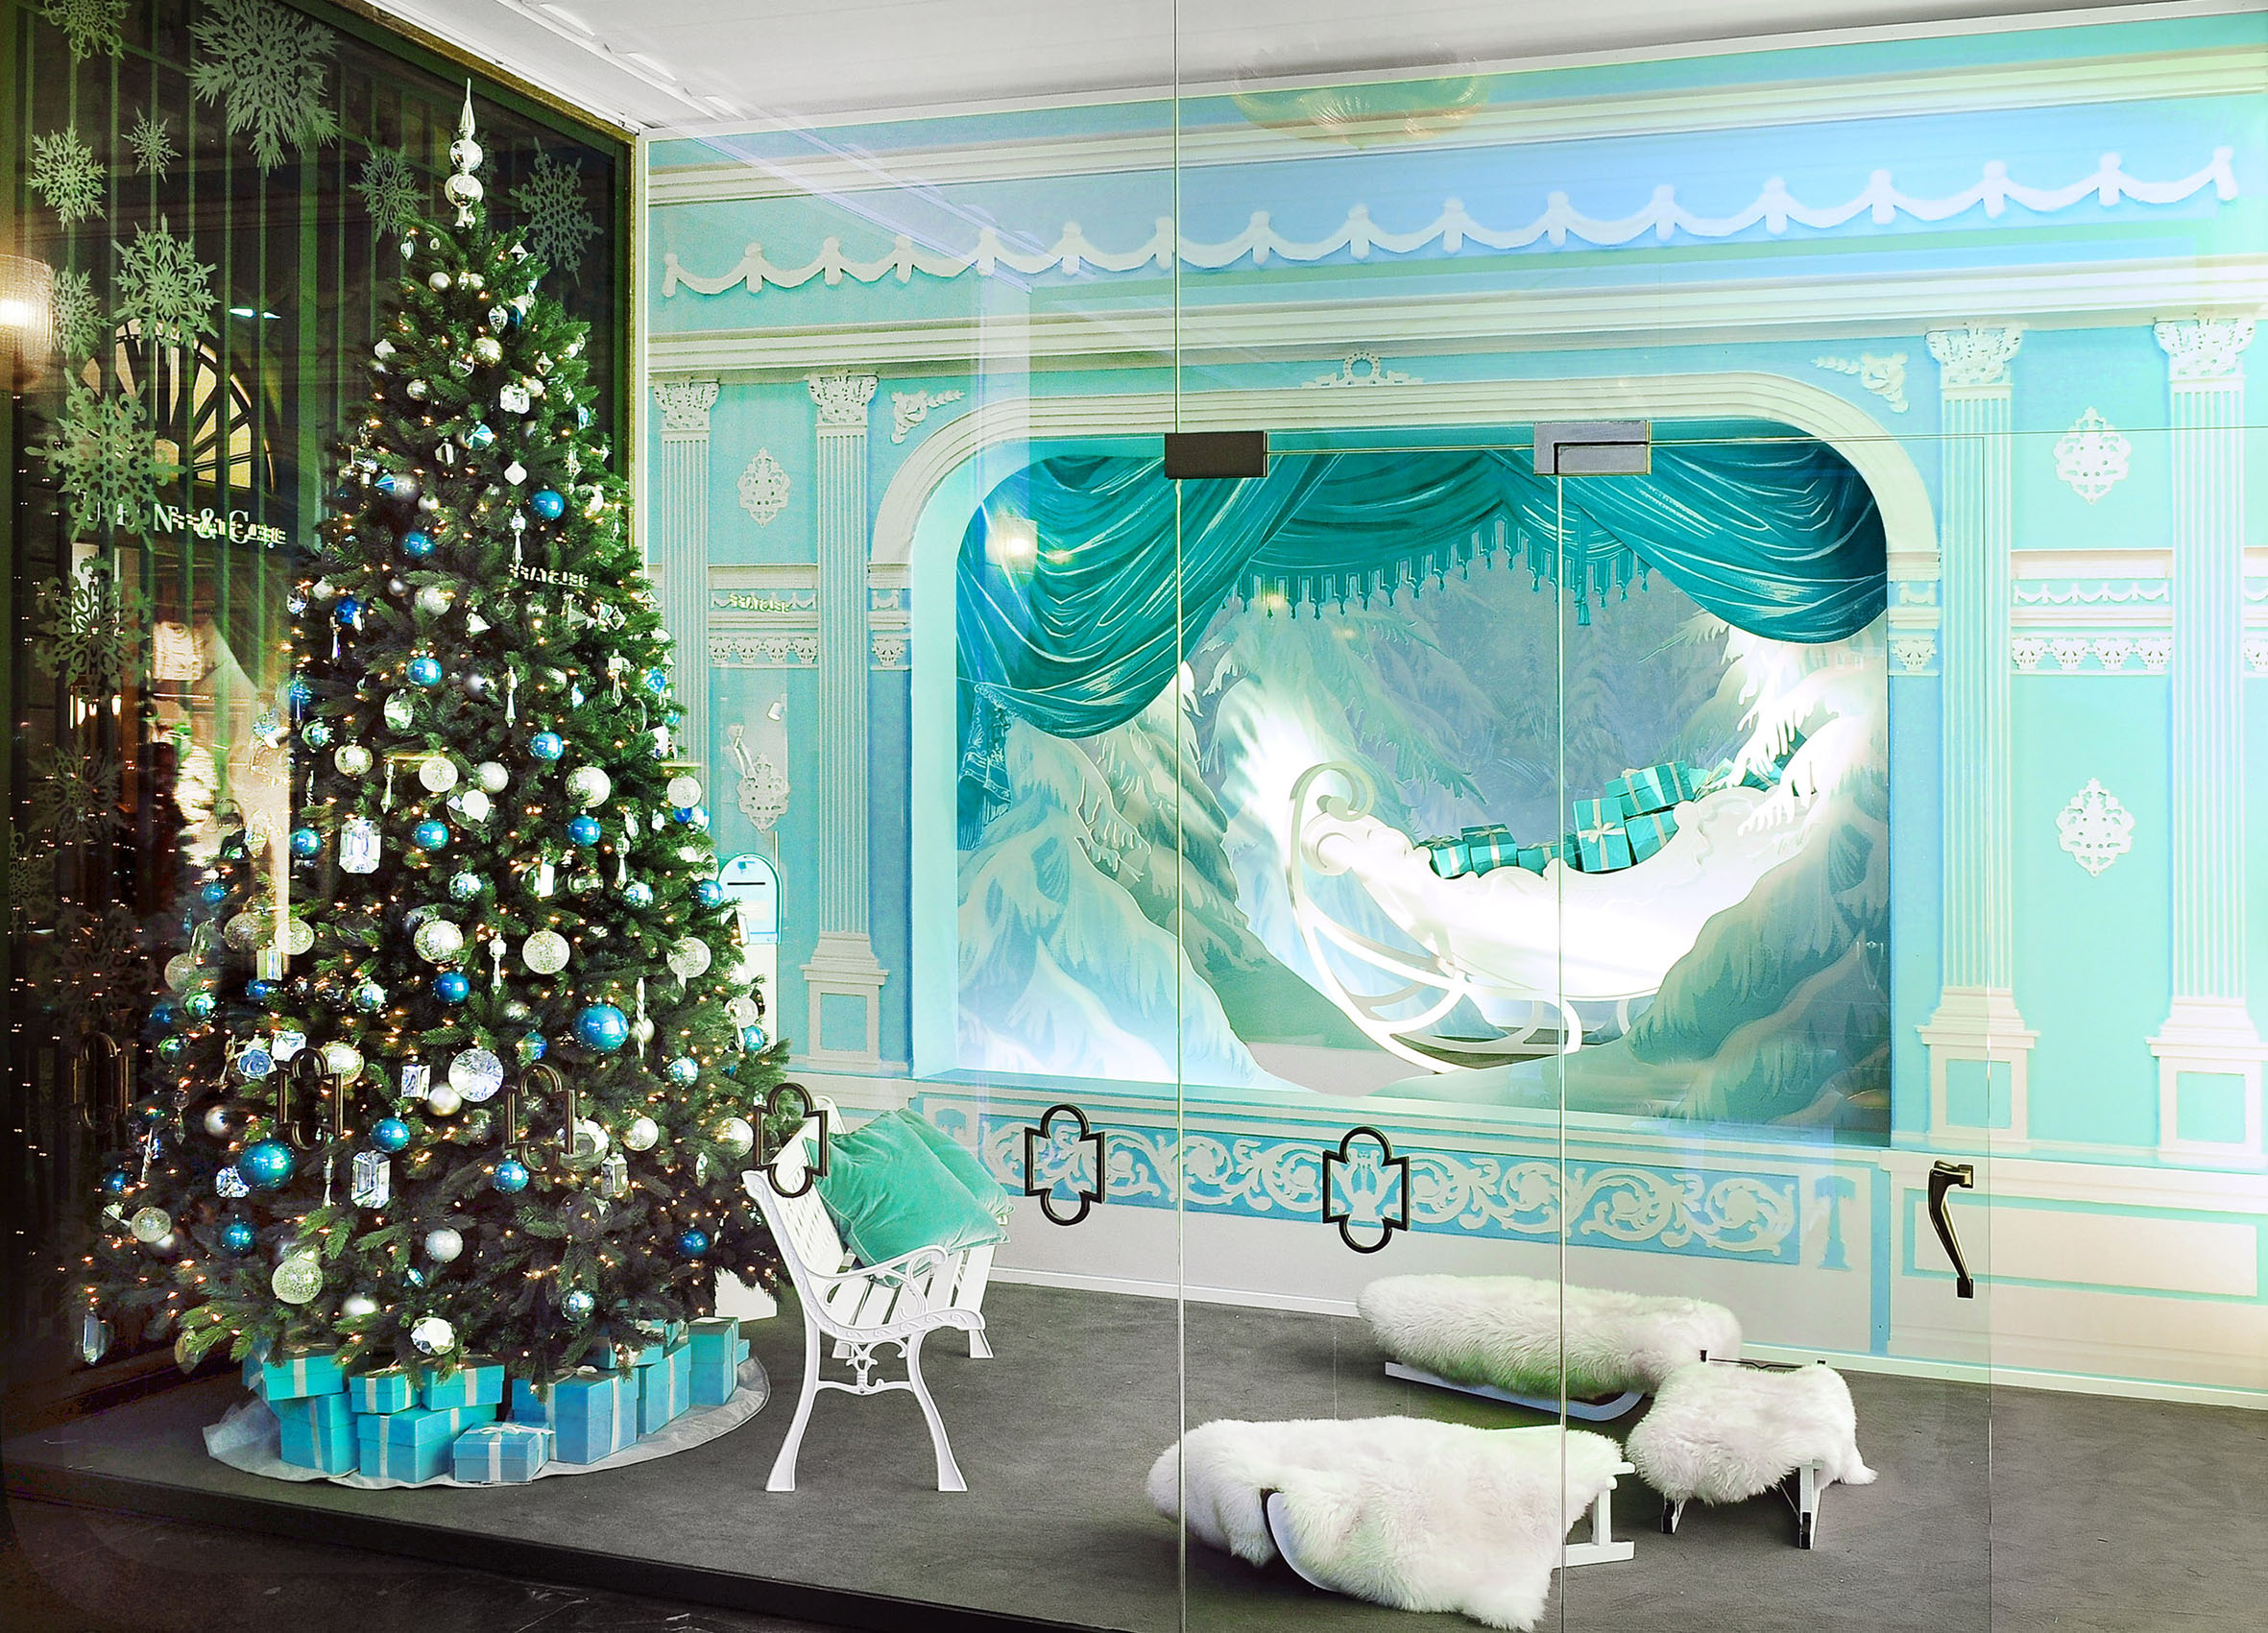 Tiffany & Co. Natale 2015 Milano: la “Dimora incantata di Babbo Natale” e tante favole